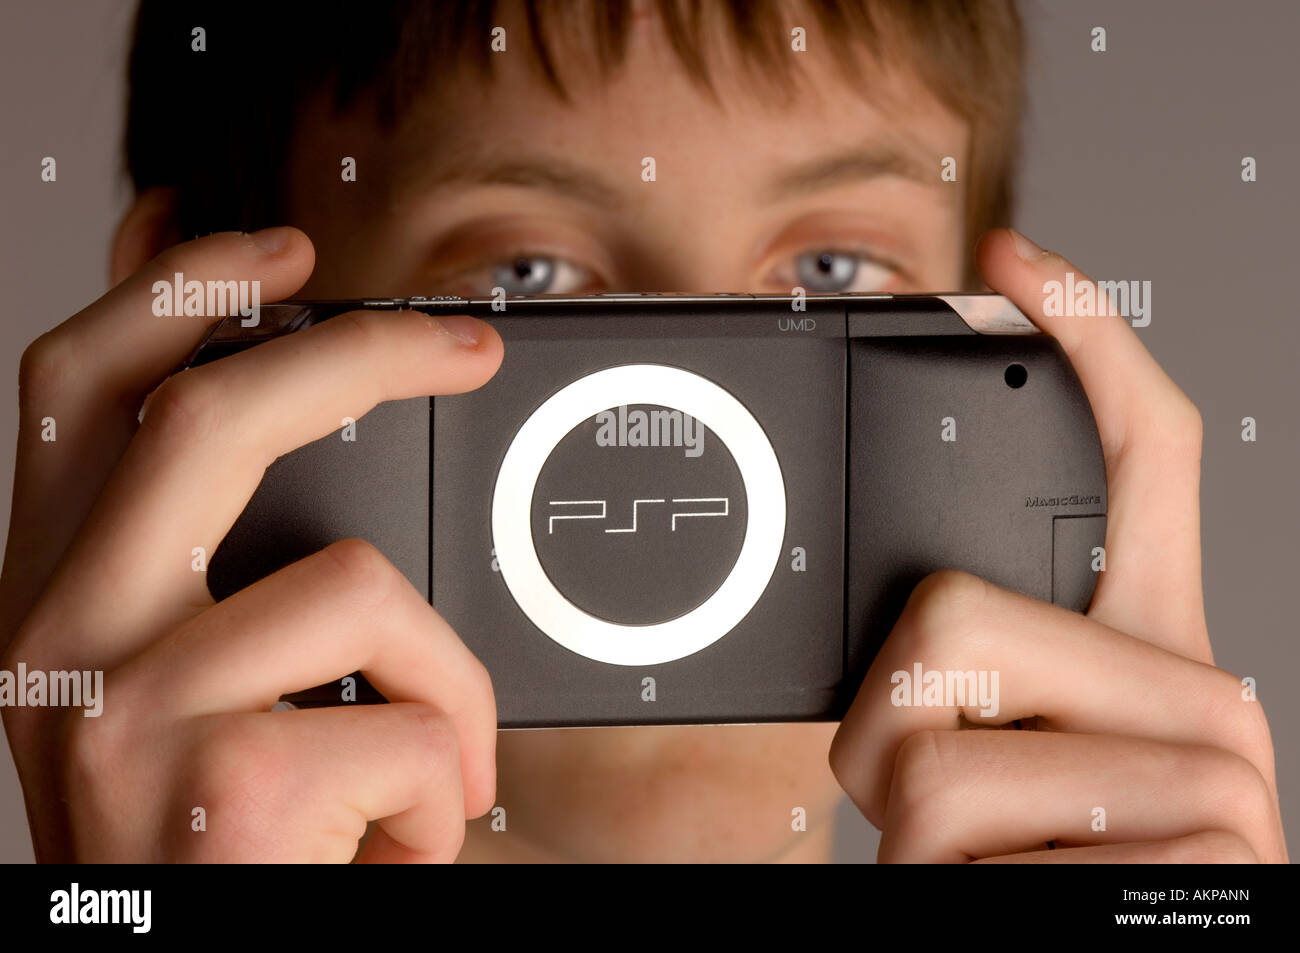 Un jeune adolescent jouant sur Sony PSP ordinateur de poche à une console de jeux. Banque D'Images